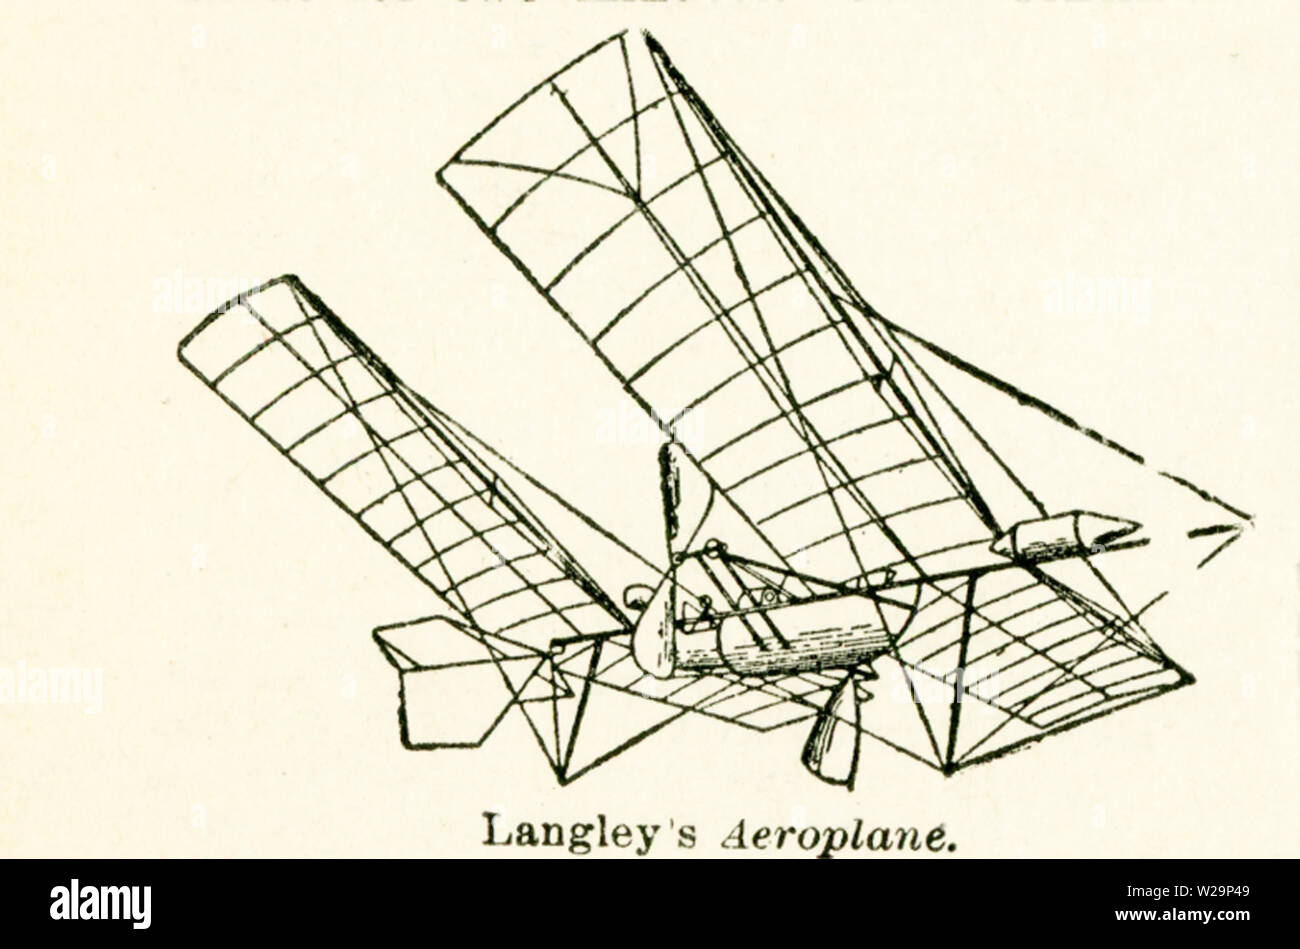 Diese Abbildung von Langley das Flugzeug stammt aus den frühen 1920er  Jahren. Per Definition ein Flugzeug ist ein Fluggerät, das schwerer ist als  Luft und durch Beihilfen für Antriebstechnik aus einer Quelle